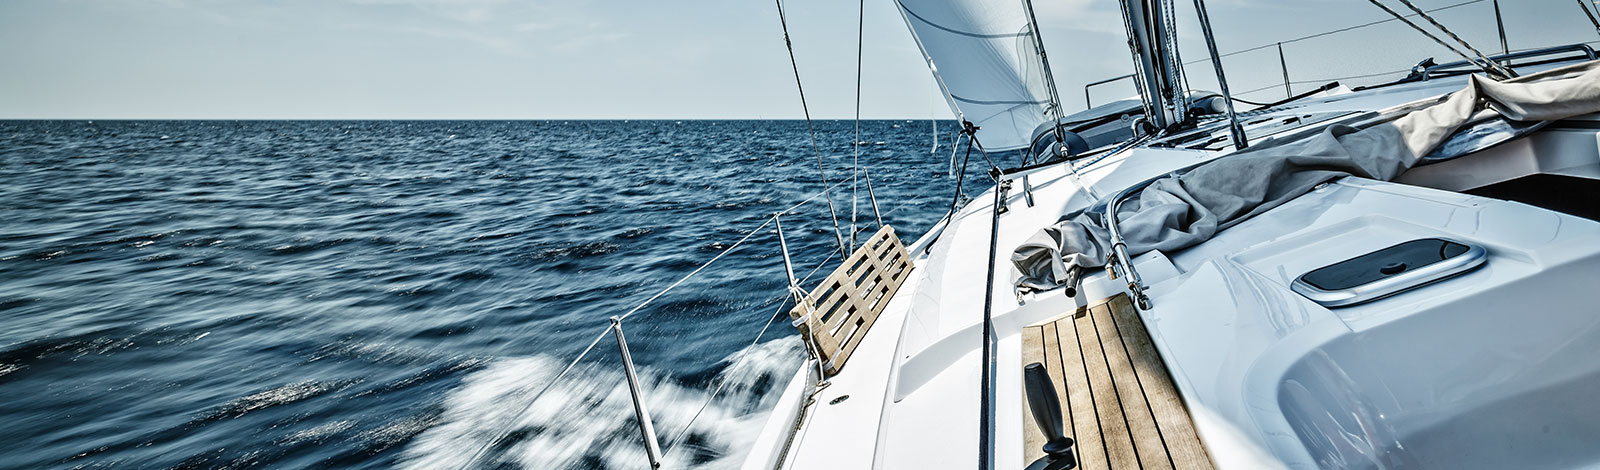 boat-yacht-loan-slide-1